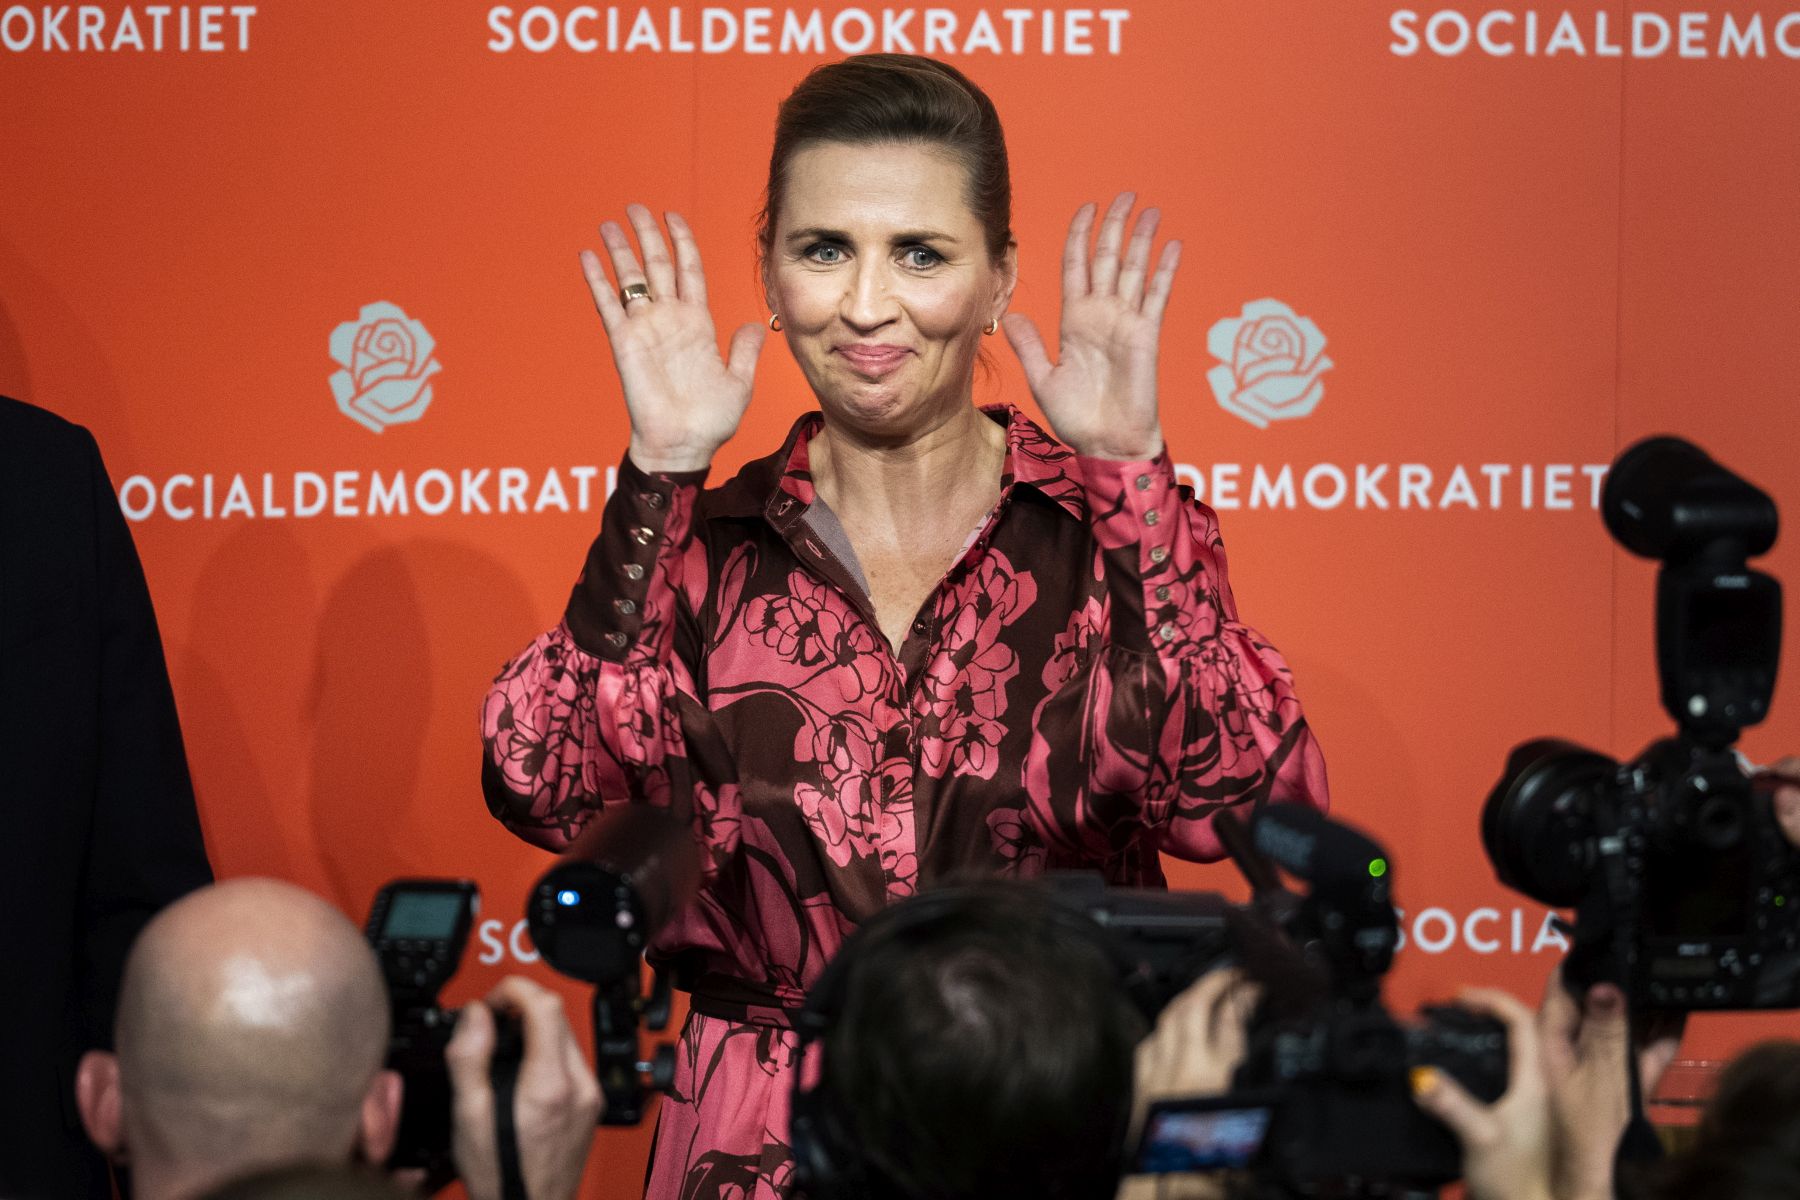 Hiába a nyércmészárlás, újra győztek a szociáldemokraták Dániában